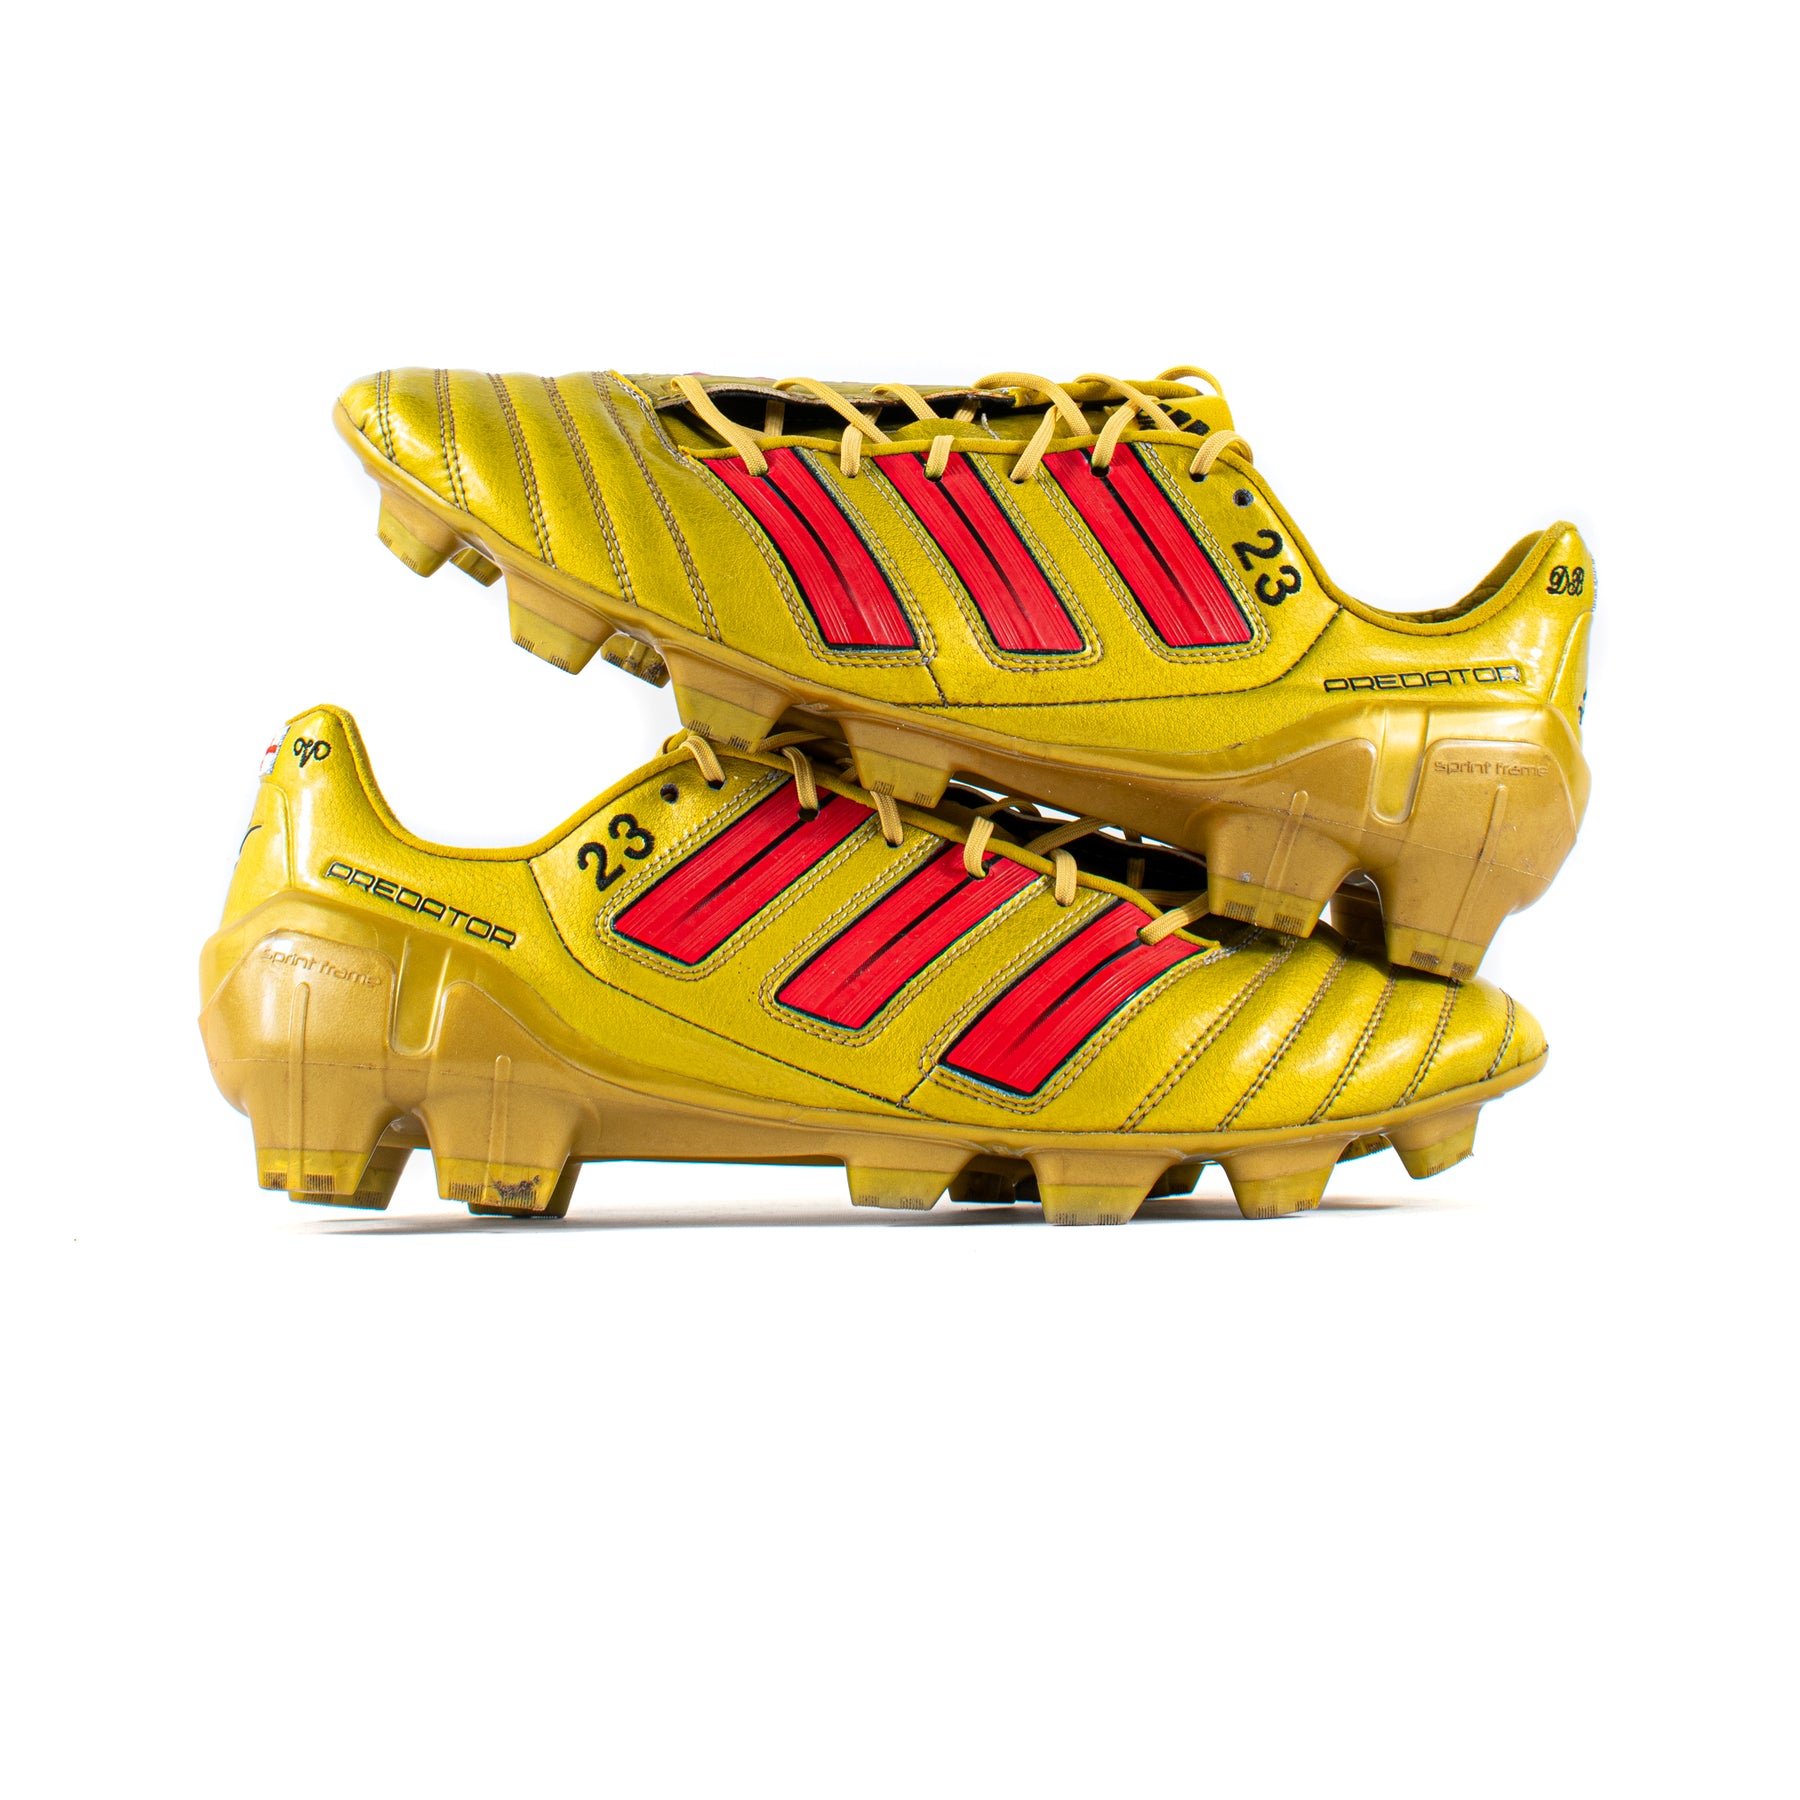 Adidas Predator Gold David Beckham Match Worn Boots Classic Soccer